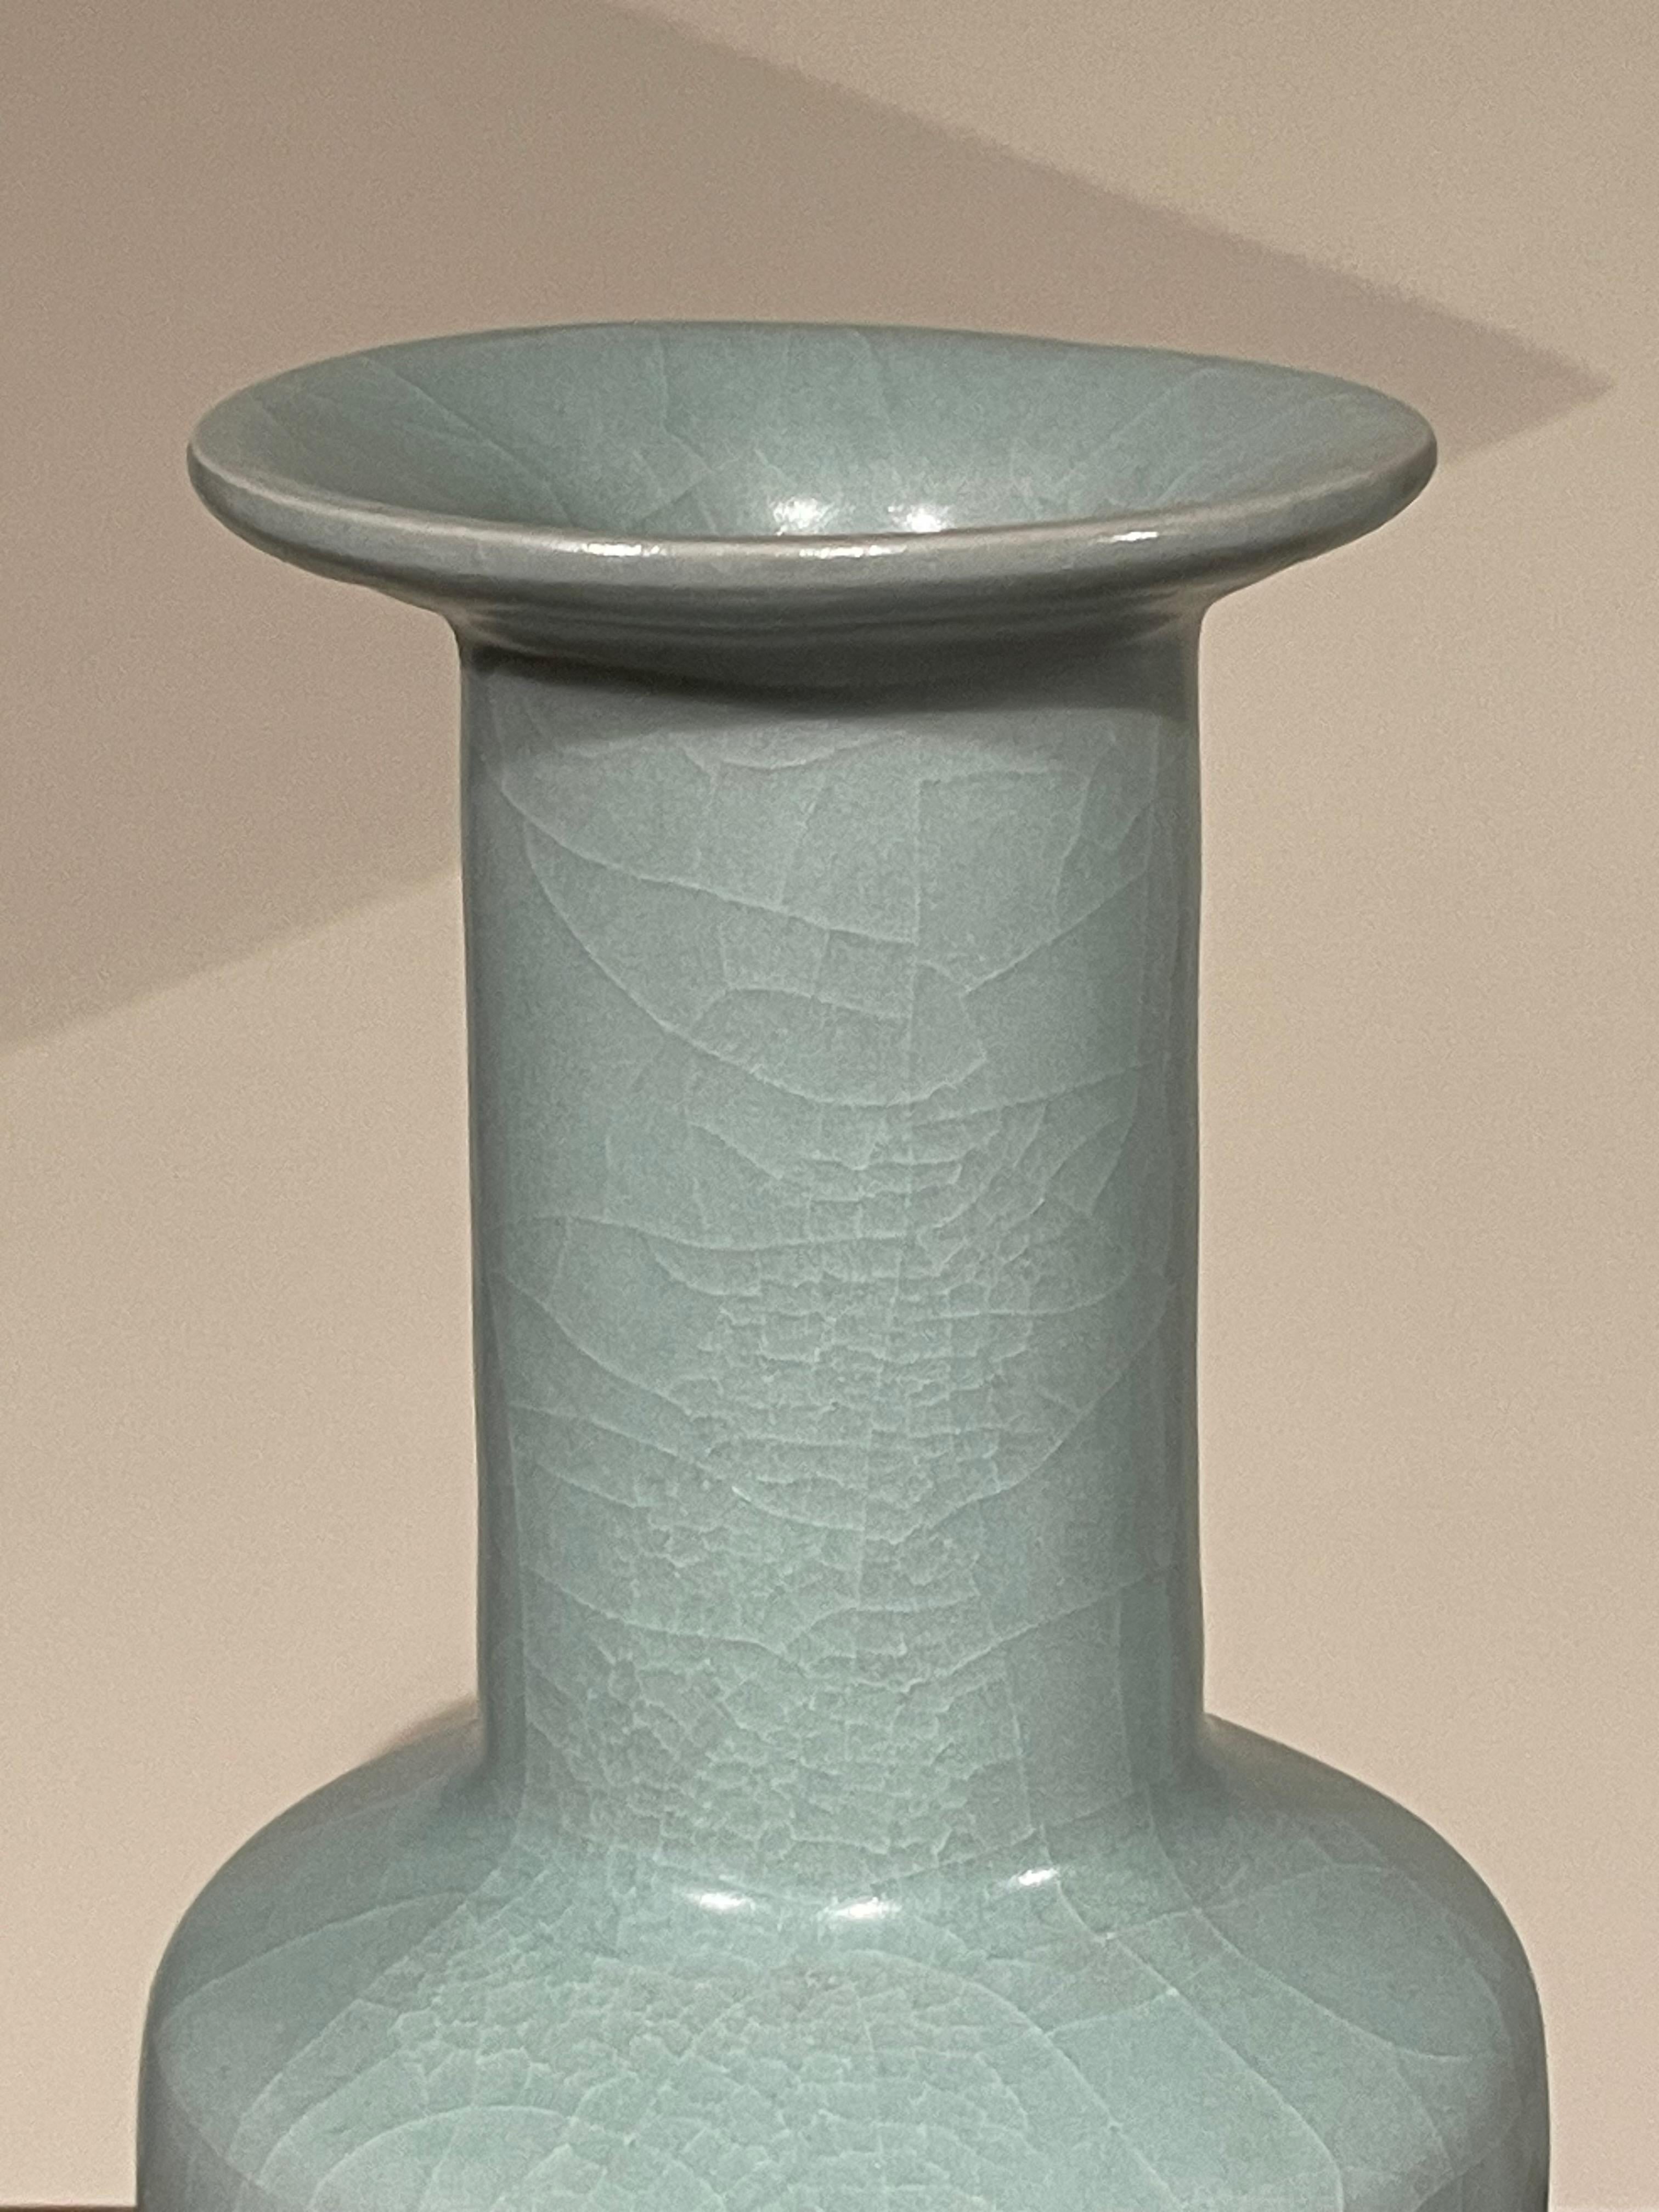 Vase contemporain chinois de couleur turquoise pâle.
Fond en forme de cylindre.
Une large collection est disponible avec des tailles et des formes variées.
ARRIVÉE EN MARS